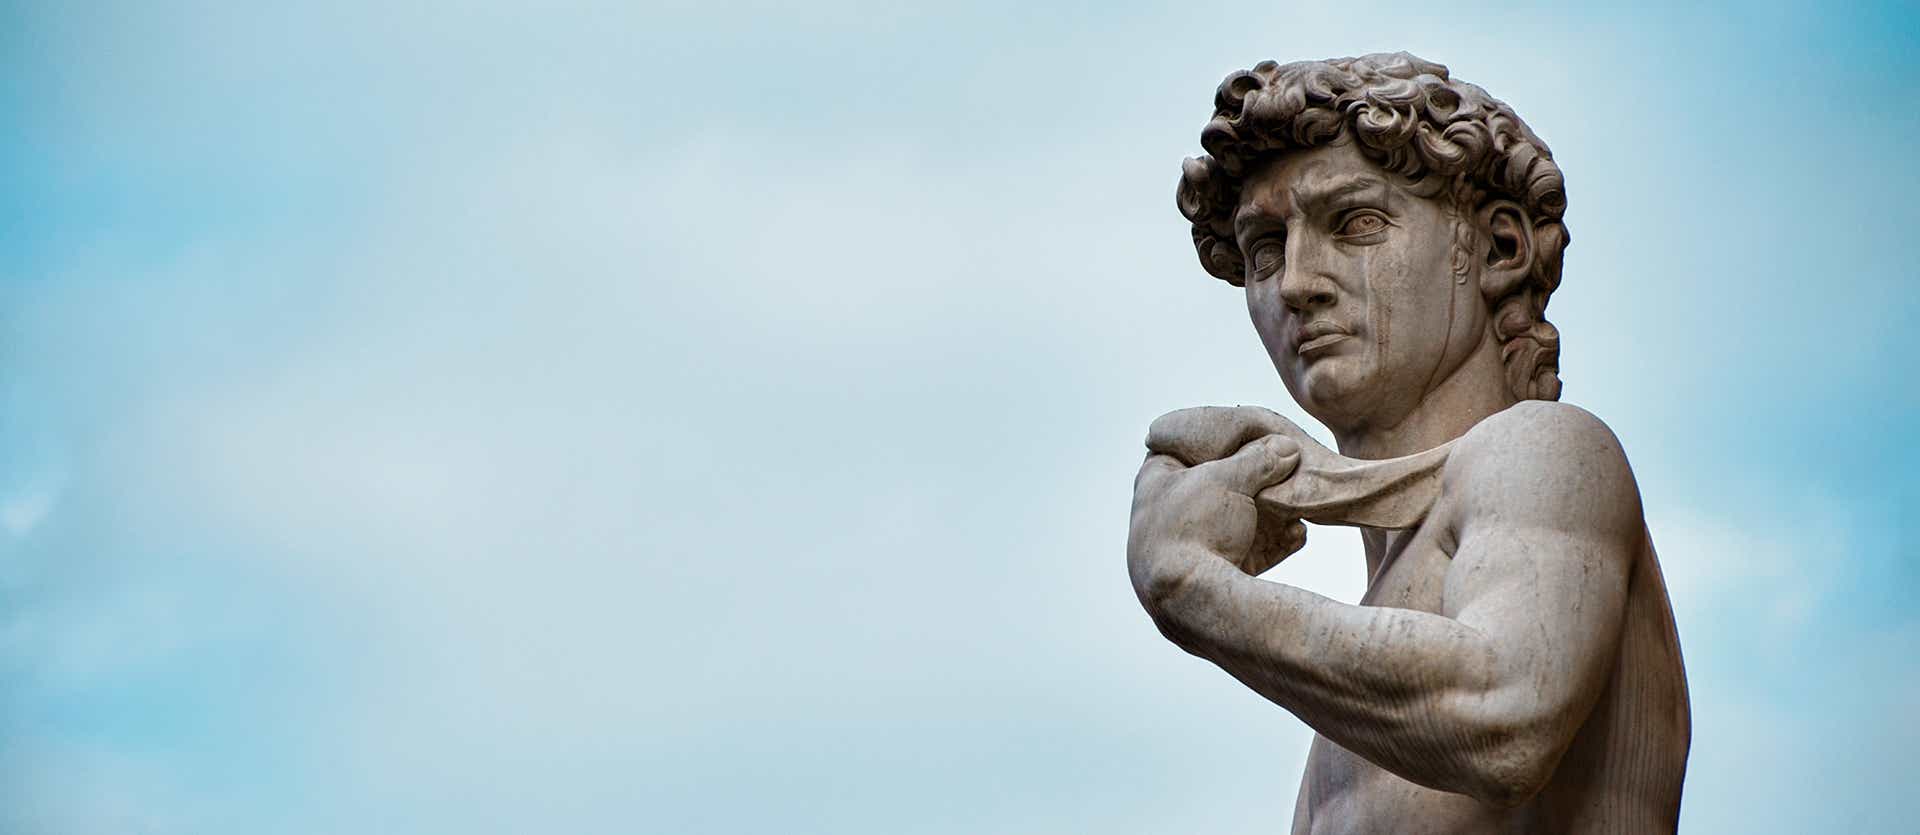 Statue of David <span class="iconos separador"></span> Florence <span class="iconos separador"></span> Italy